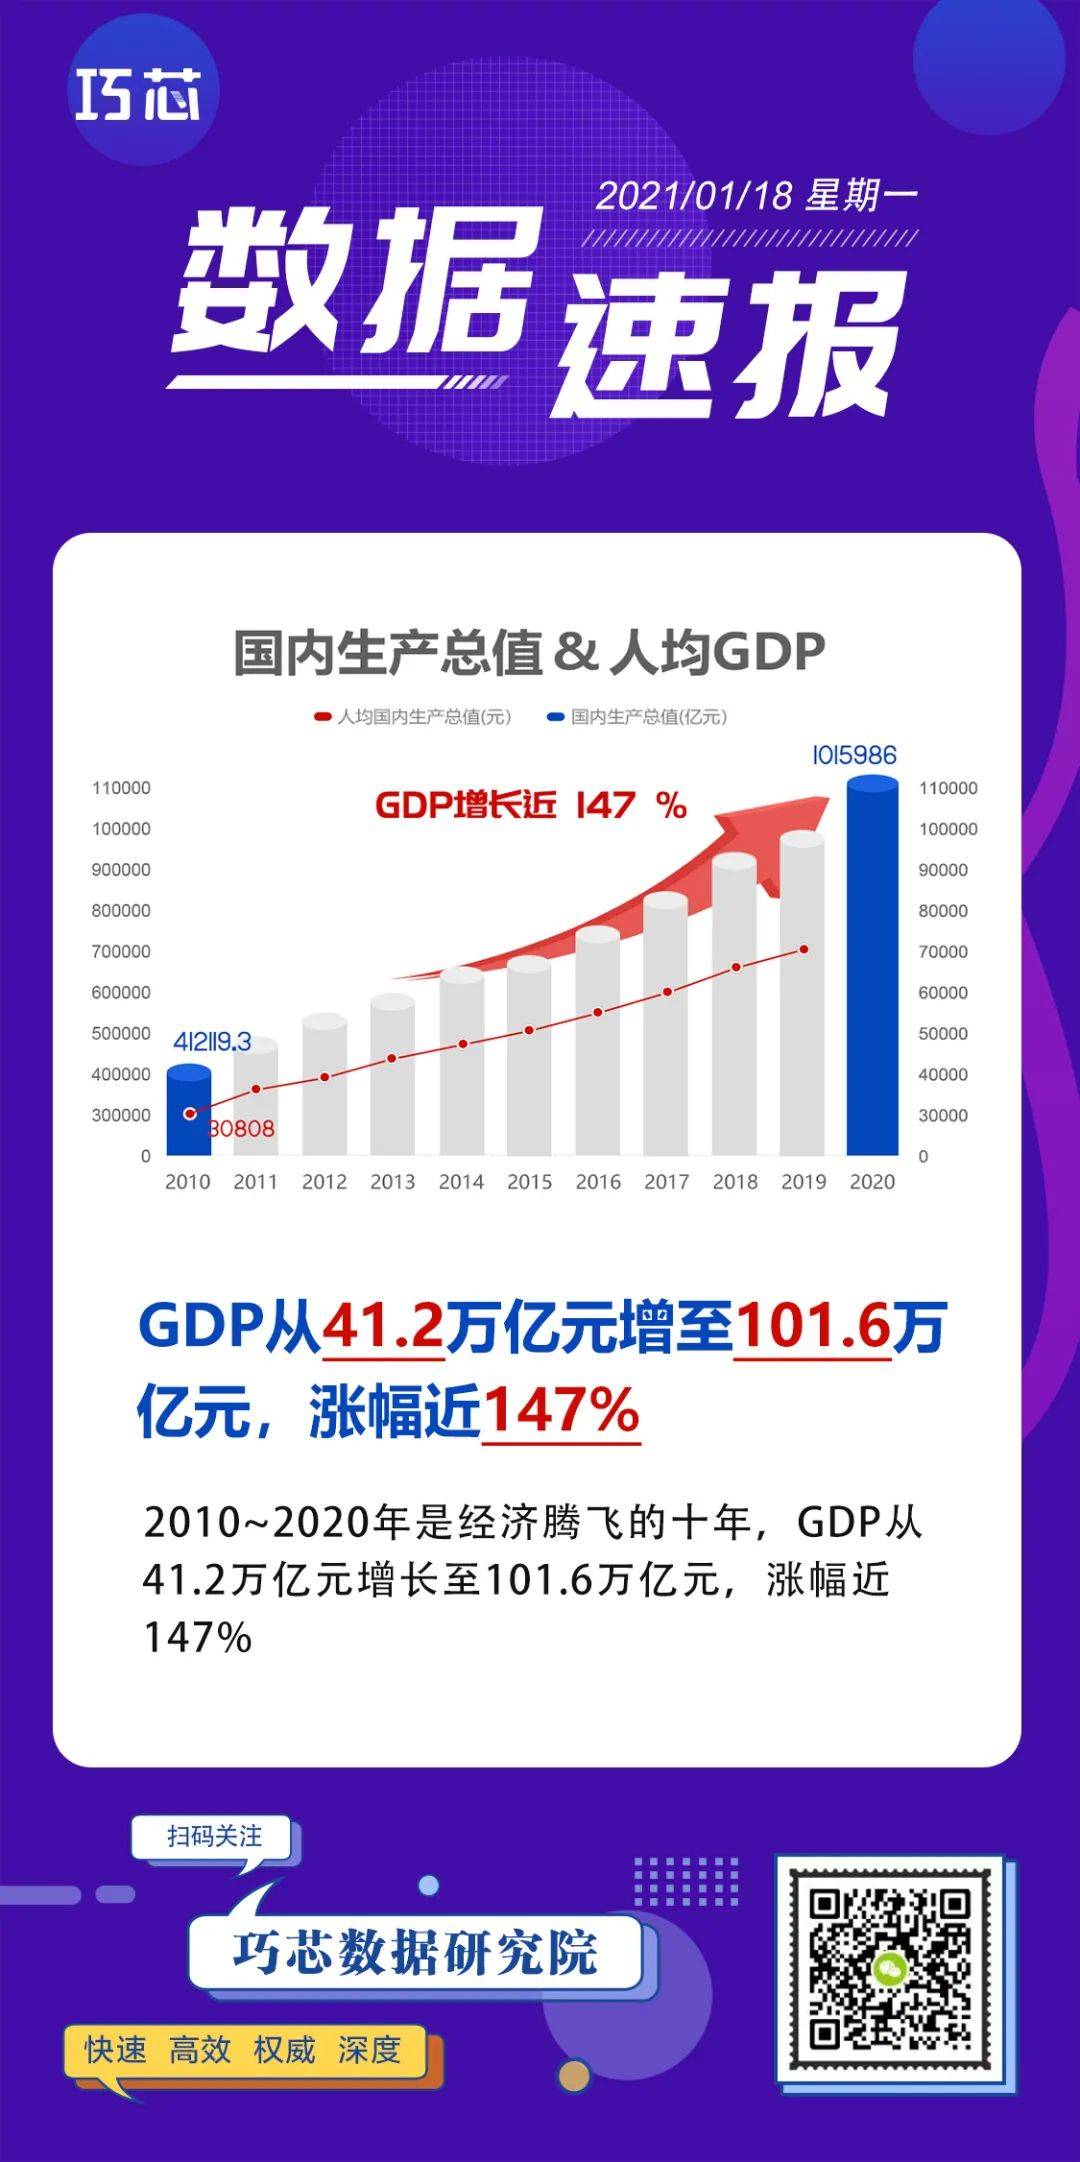 近十年来我国gdp年均增长率_广西 大开放带来 黄金十年